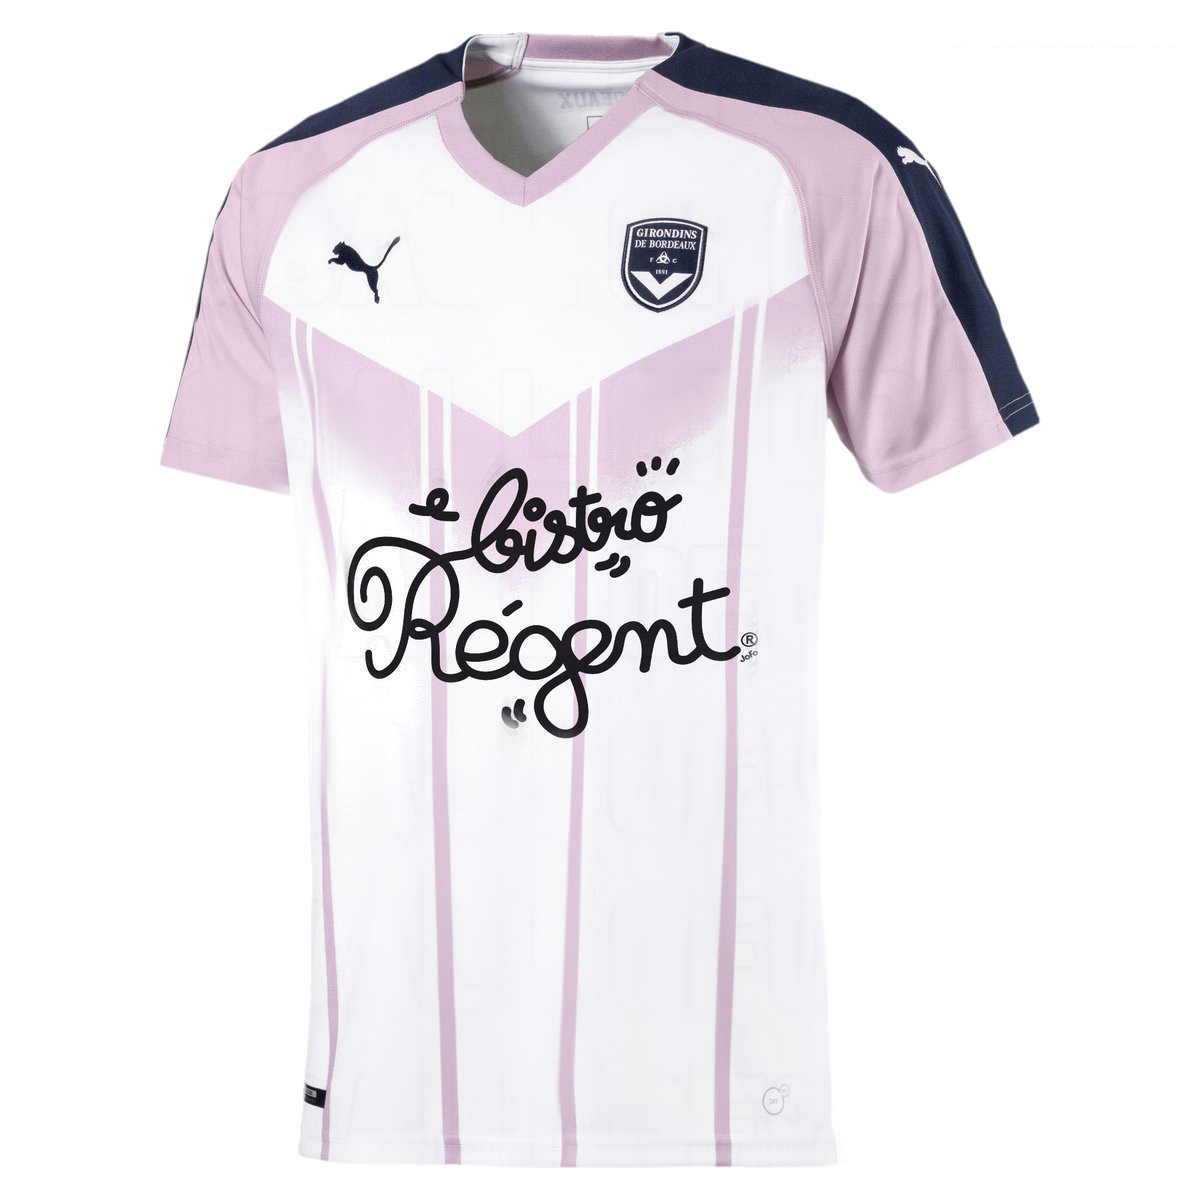 Bordeaux 2019 maillot rose exterieur